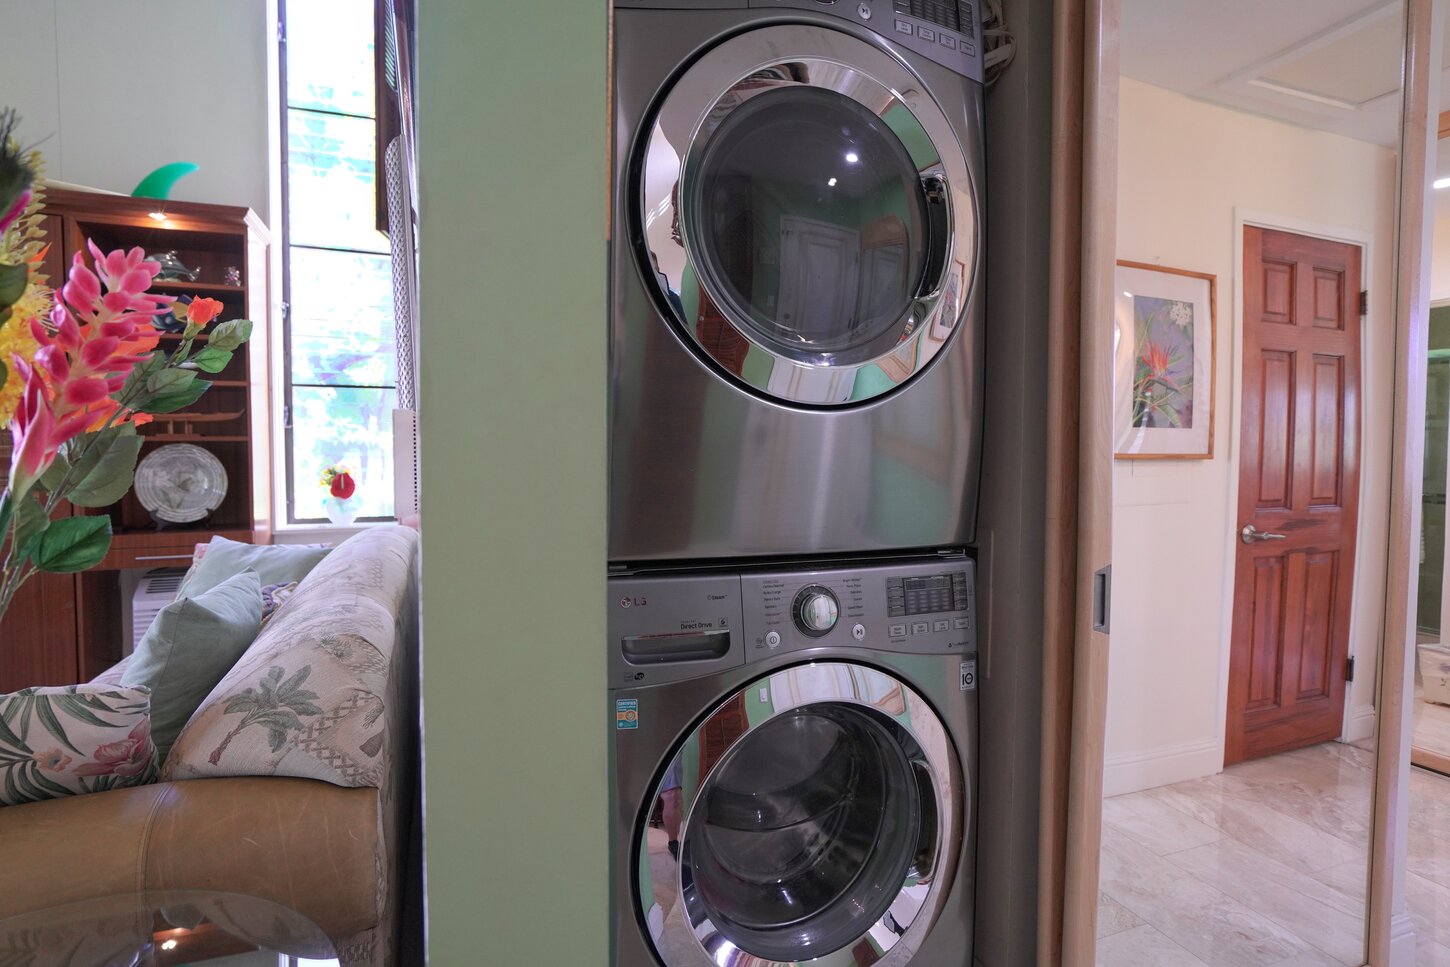 Washer/dryer in unit- hidden behind mirrored doors.